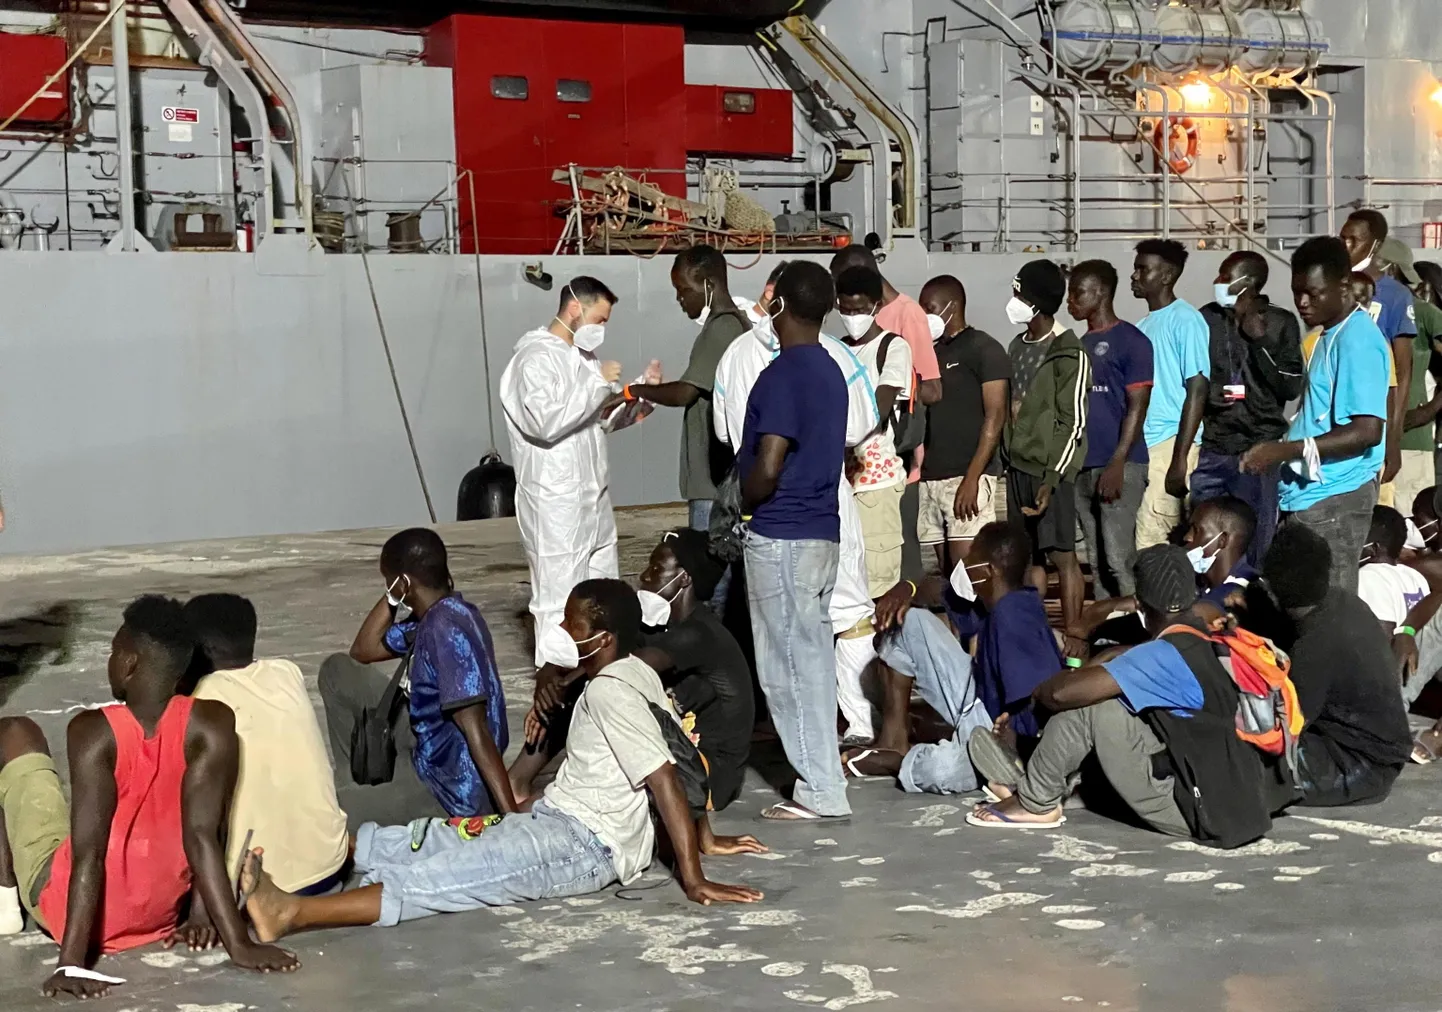 Umbes 700 migranti ootab sel juuli keskpaigas tehtud fotol pardaleminekut Itaalia mereväe laevale, mis viib nad Lampedusa saarelt edasi Messinasse ja Calabriasse. Hetkel on Lampedusa saarel umbes 2000 ebaseaduslikku sisserändajat.